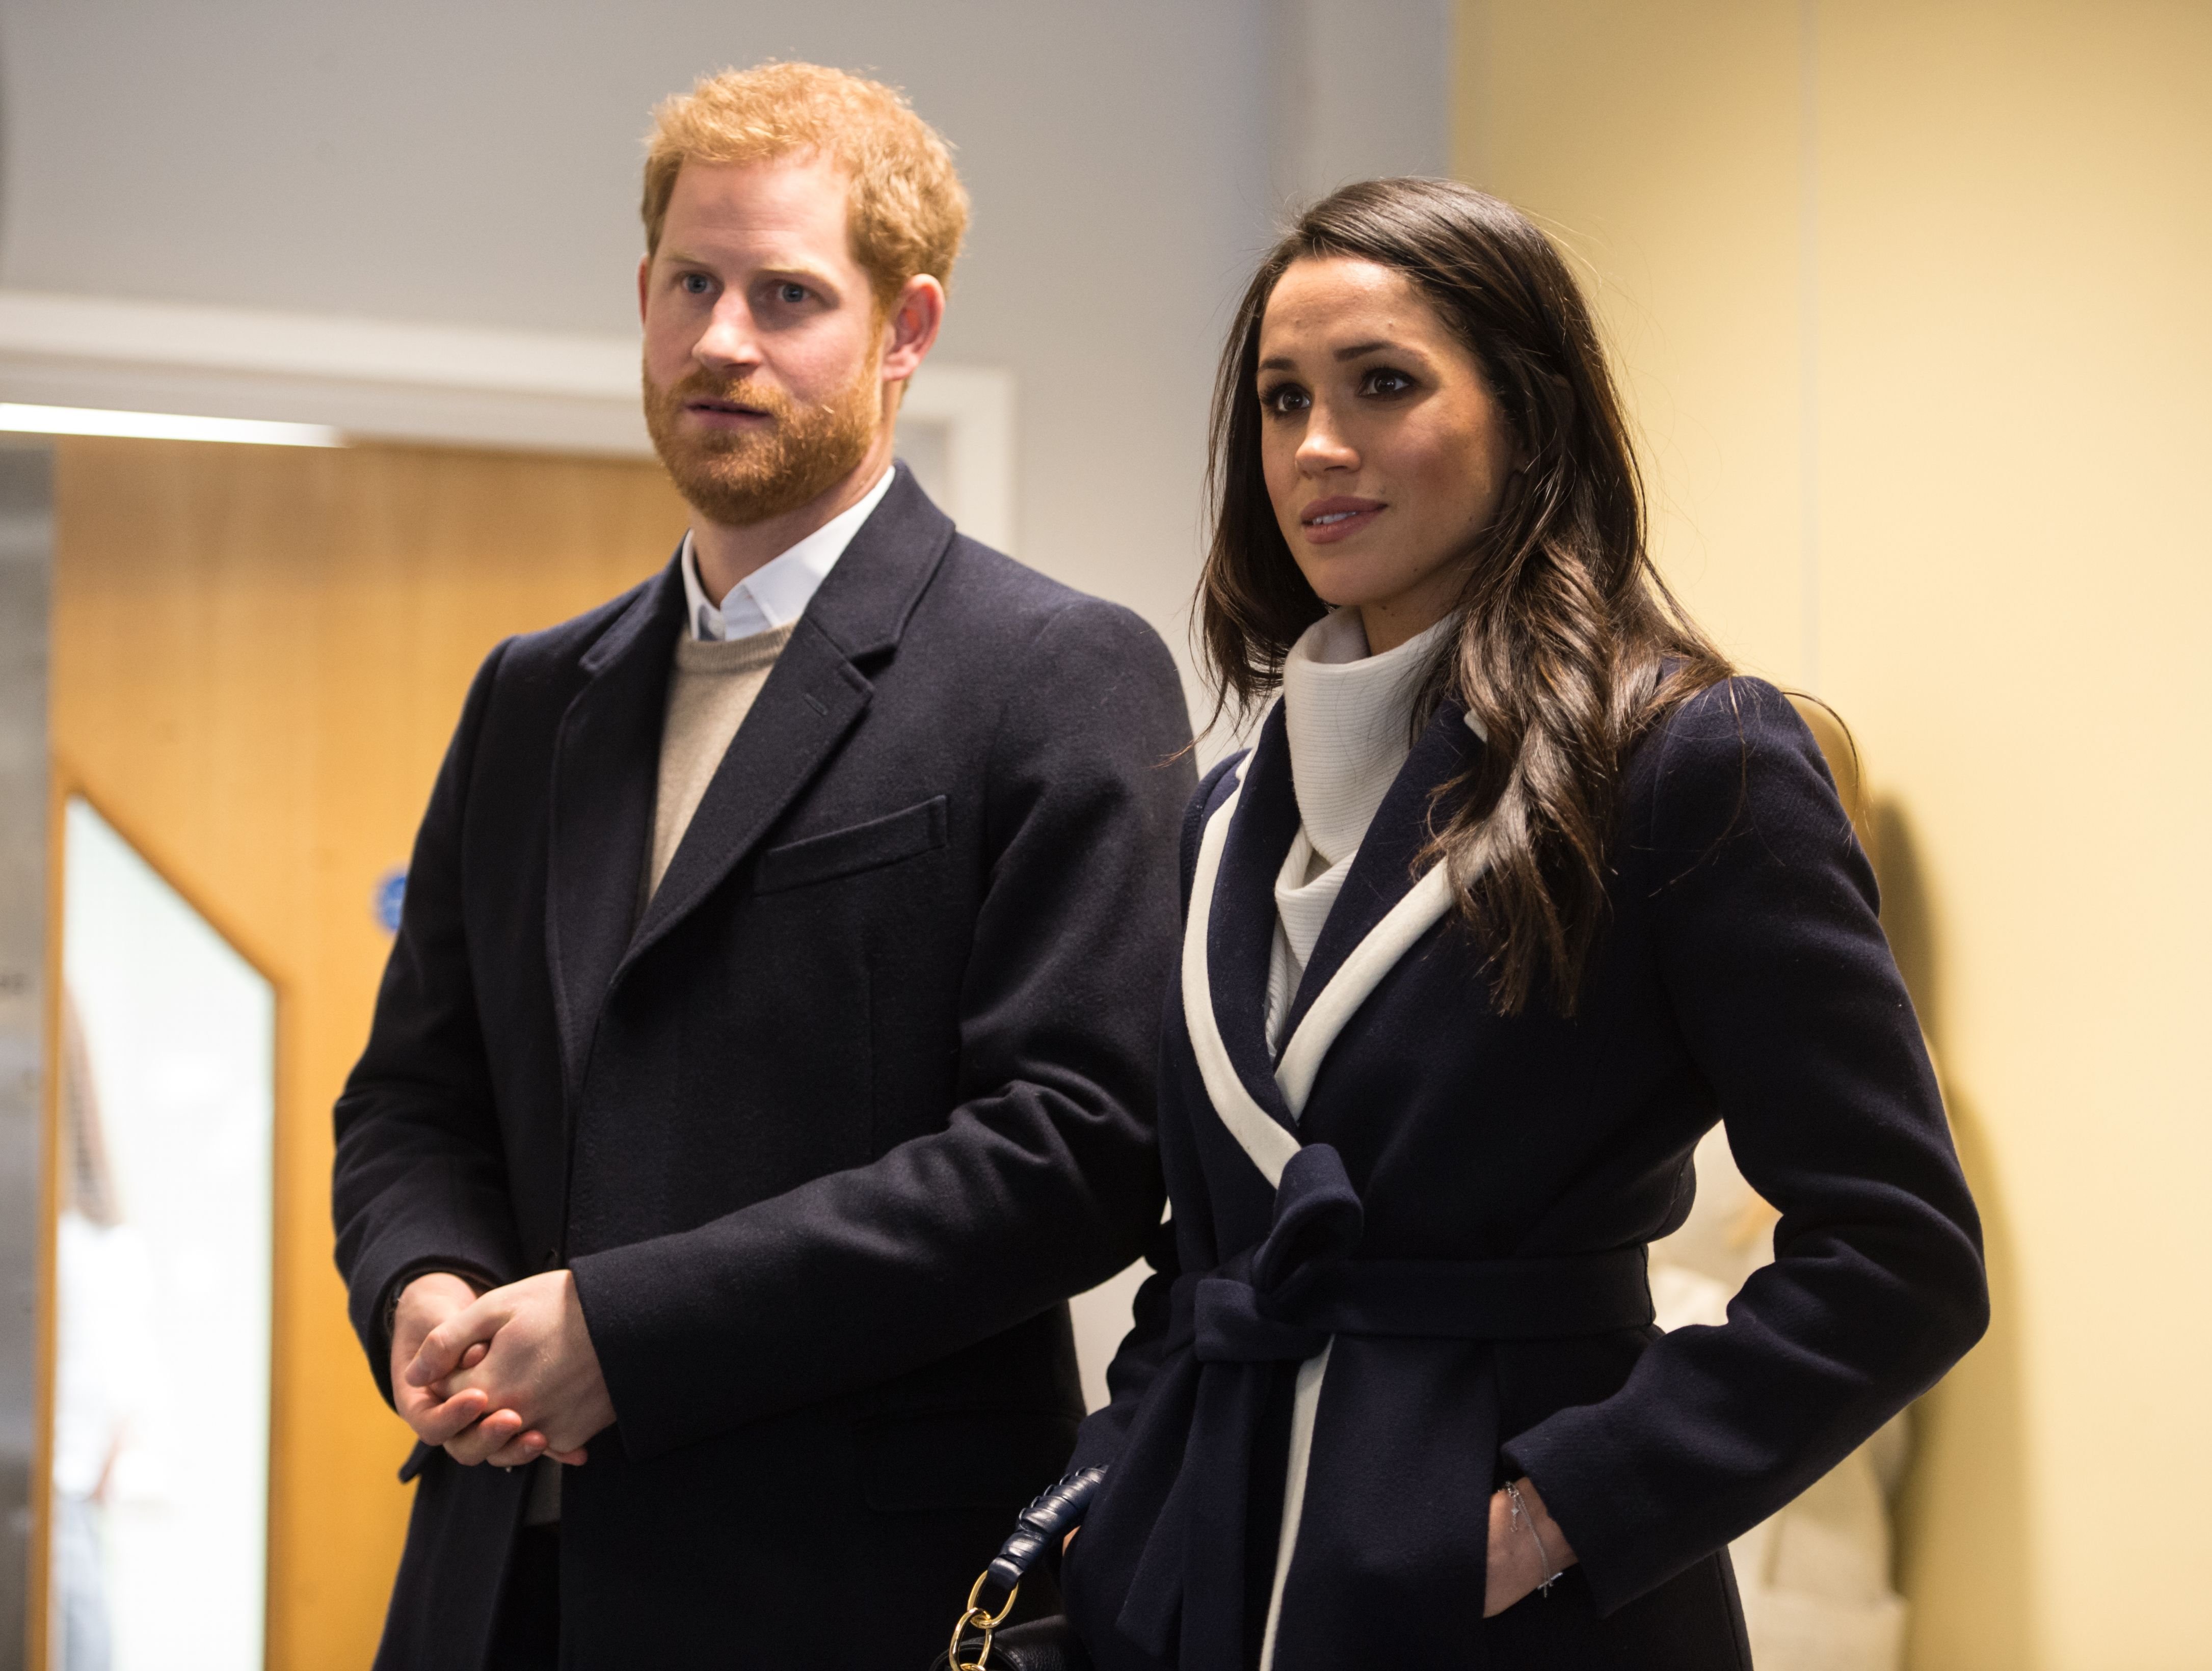 Prinz Harry und Meghan Markle in Birmingham, Mittelengland am 8. März 2018. | Quelle: Getty Images